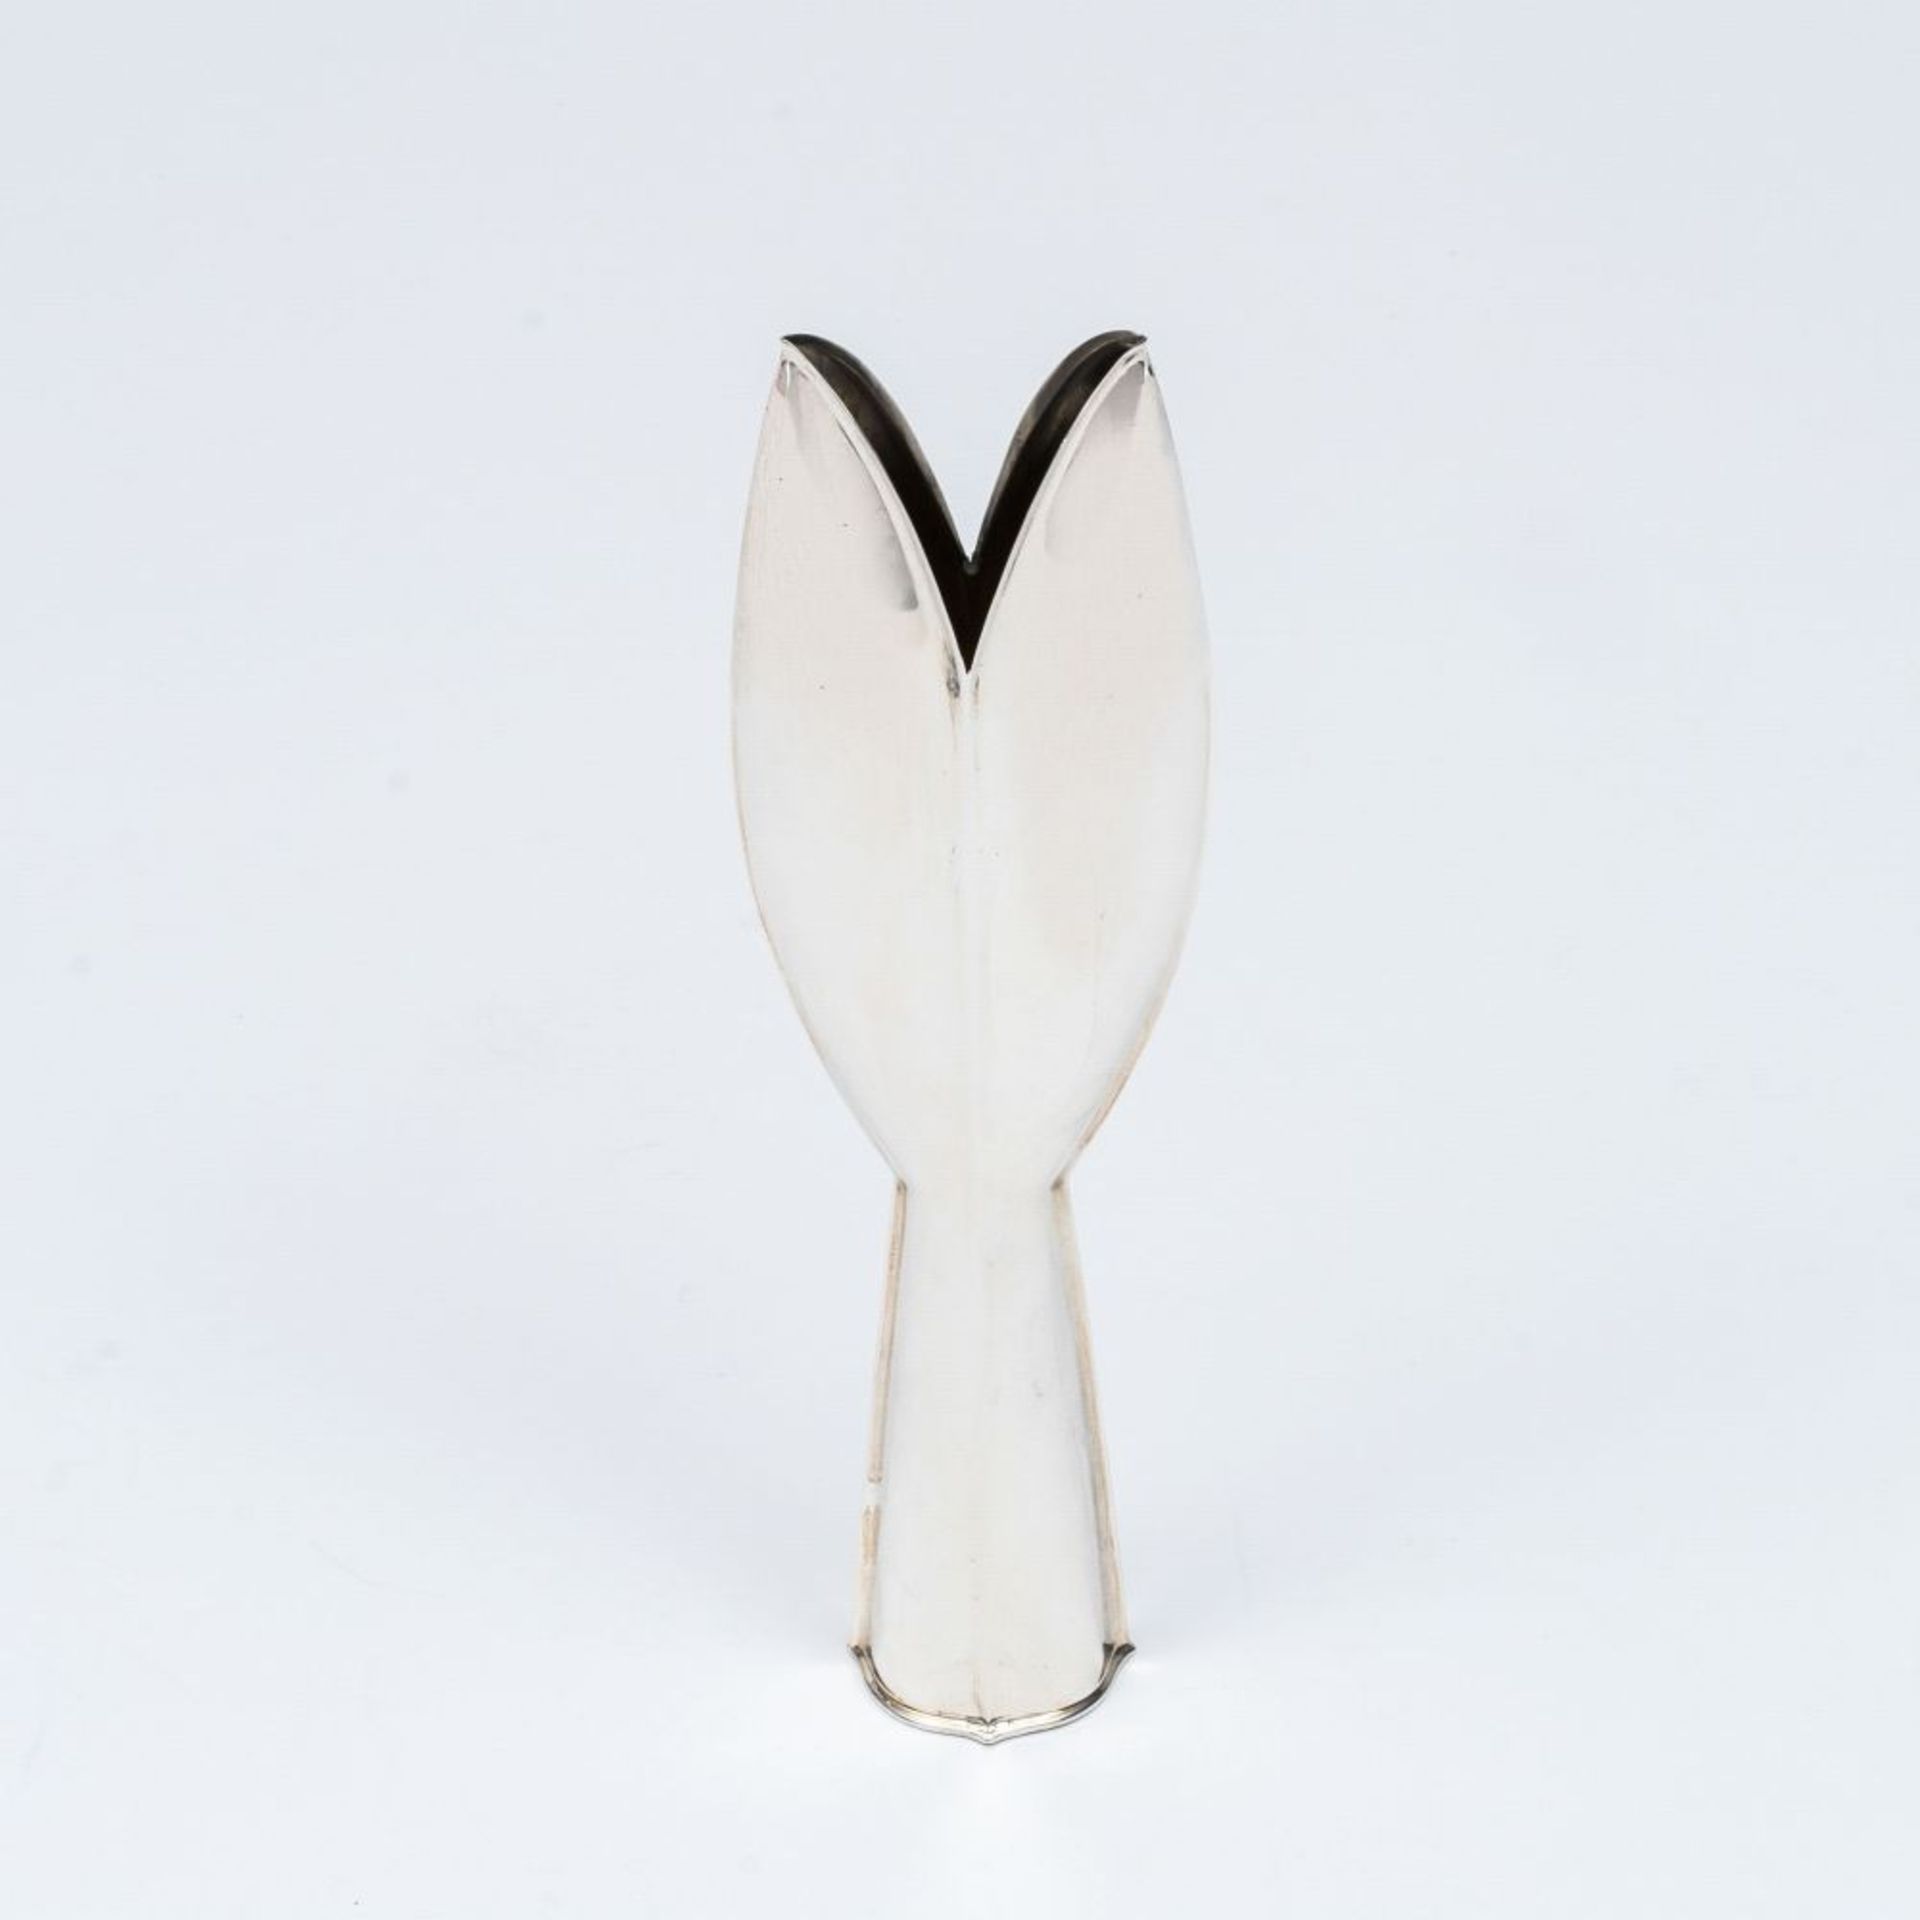 Wirkkala, Tapio (Hanko/Finnland 1915 - Helsinki 1985). An Iconic Vase 'Tulip'.